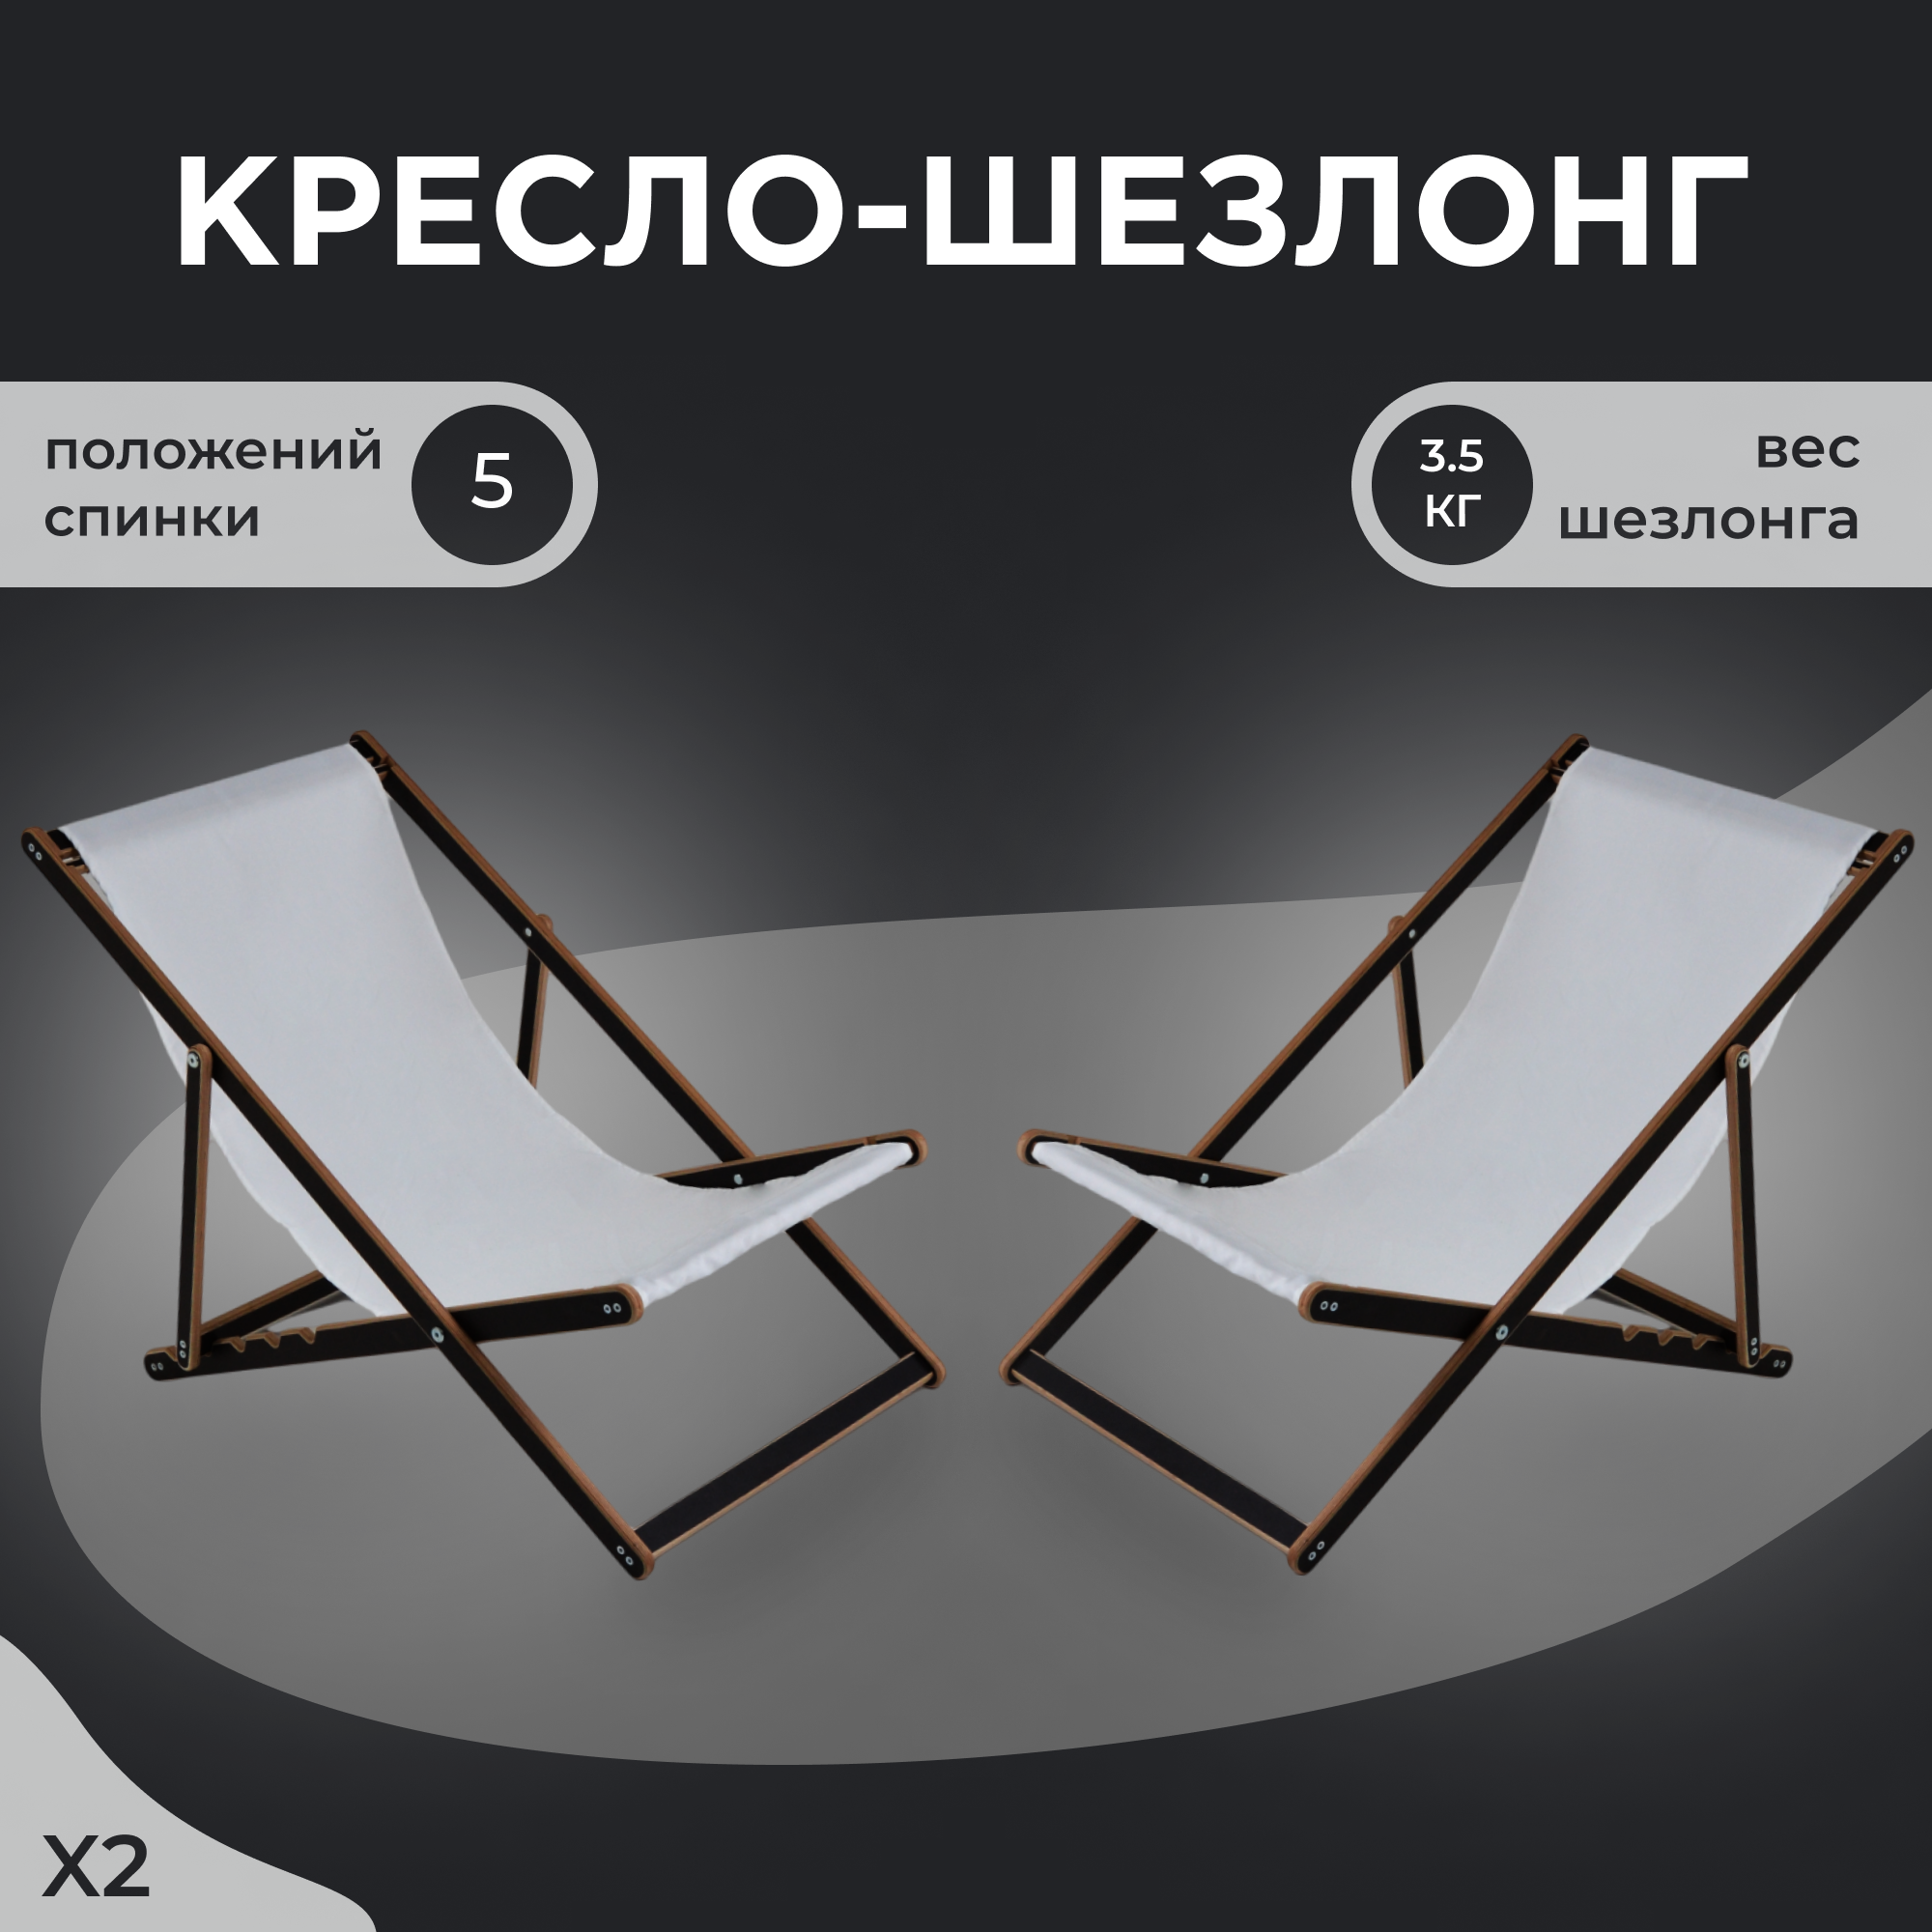 Кресло-шезлонг "Березка" ламинированный с белой тканью для дома и для дачи комплект 2 шт